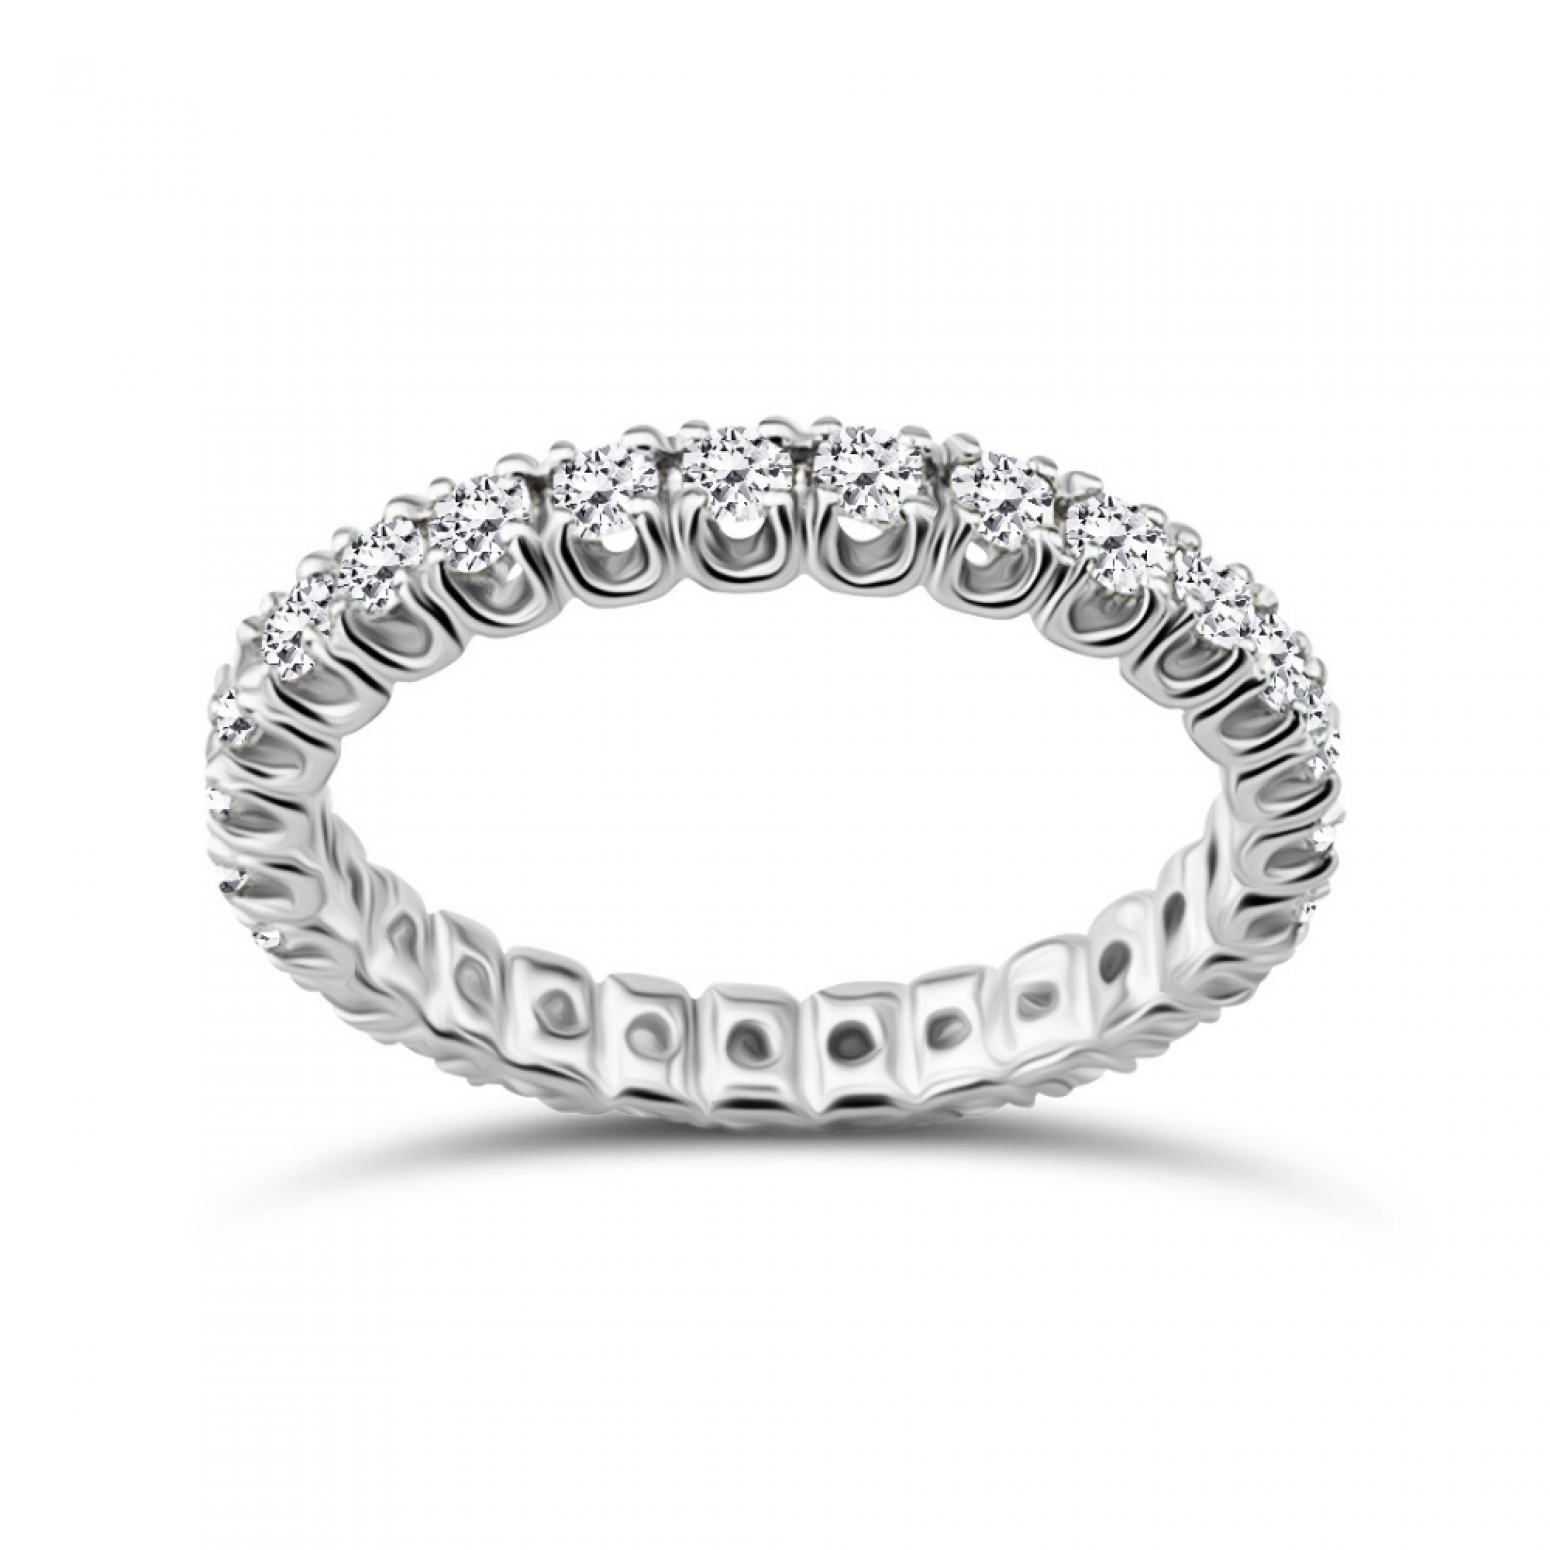 Full stone ring 18K white gold with diamonds 0.77ct, VVS2/VS1, F/G from IGL da3695 ENGAGEMENT RINGS Κοσμηματα - chrilia.gr